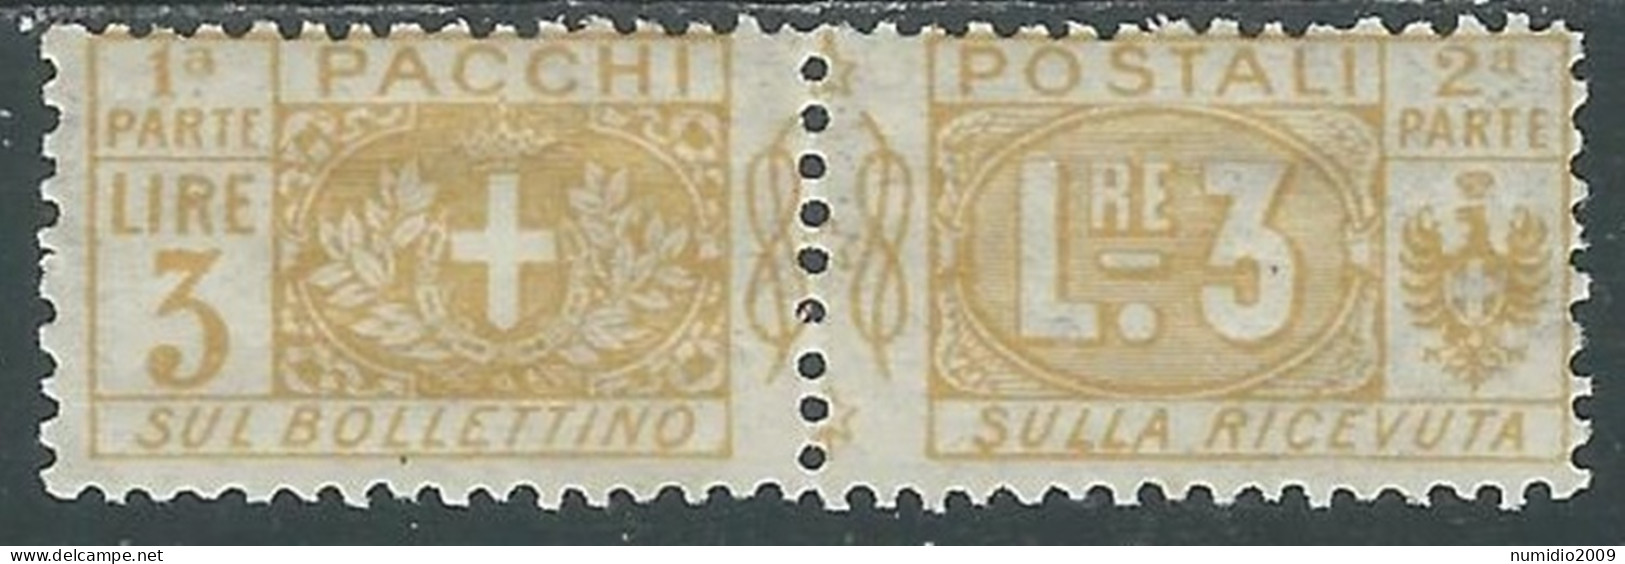 1914-22 REGNO PACCHI POSTALI 3 LIRE MH * - P31-3 - Colis-postaux